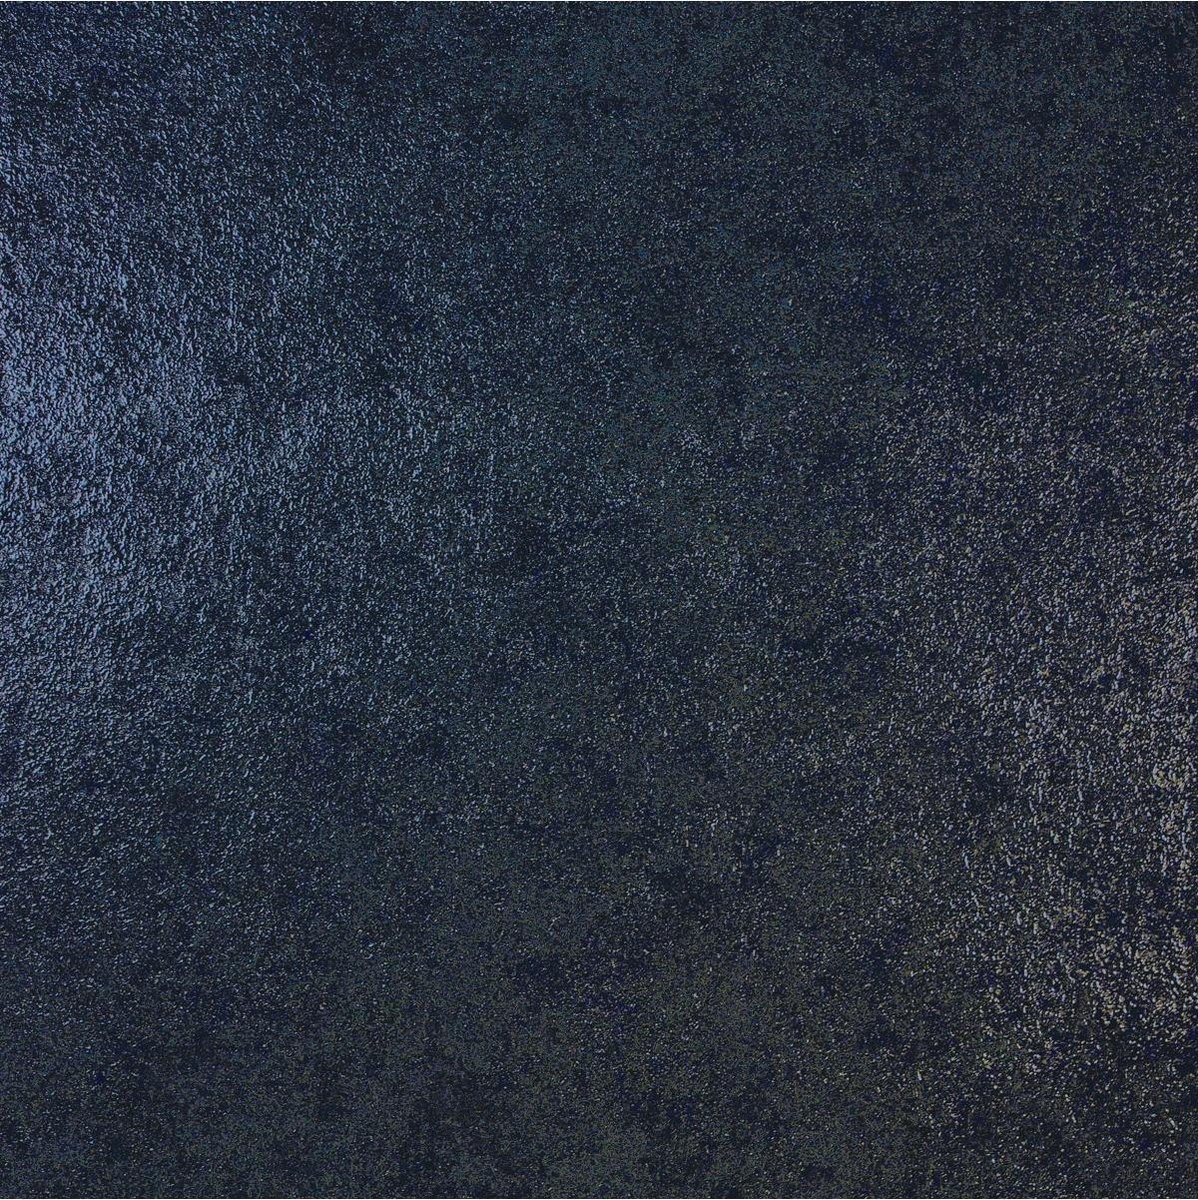 Kader ik ben trots Verfrissend Dutch Wallcoverings Behang Galactik Uni Donkerblauw L722-01 kopen? |  Korting tot 40% - De Verfzaak